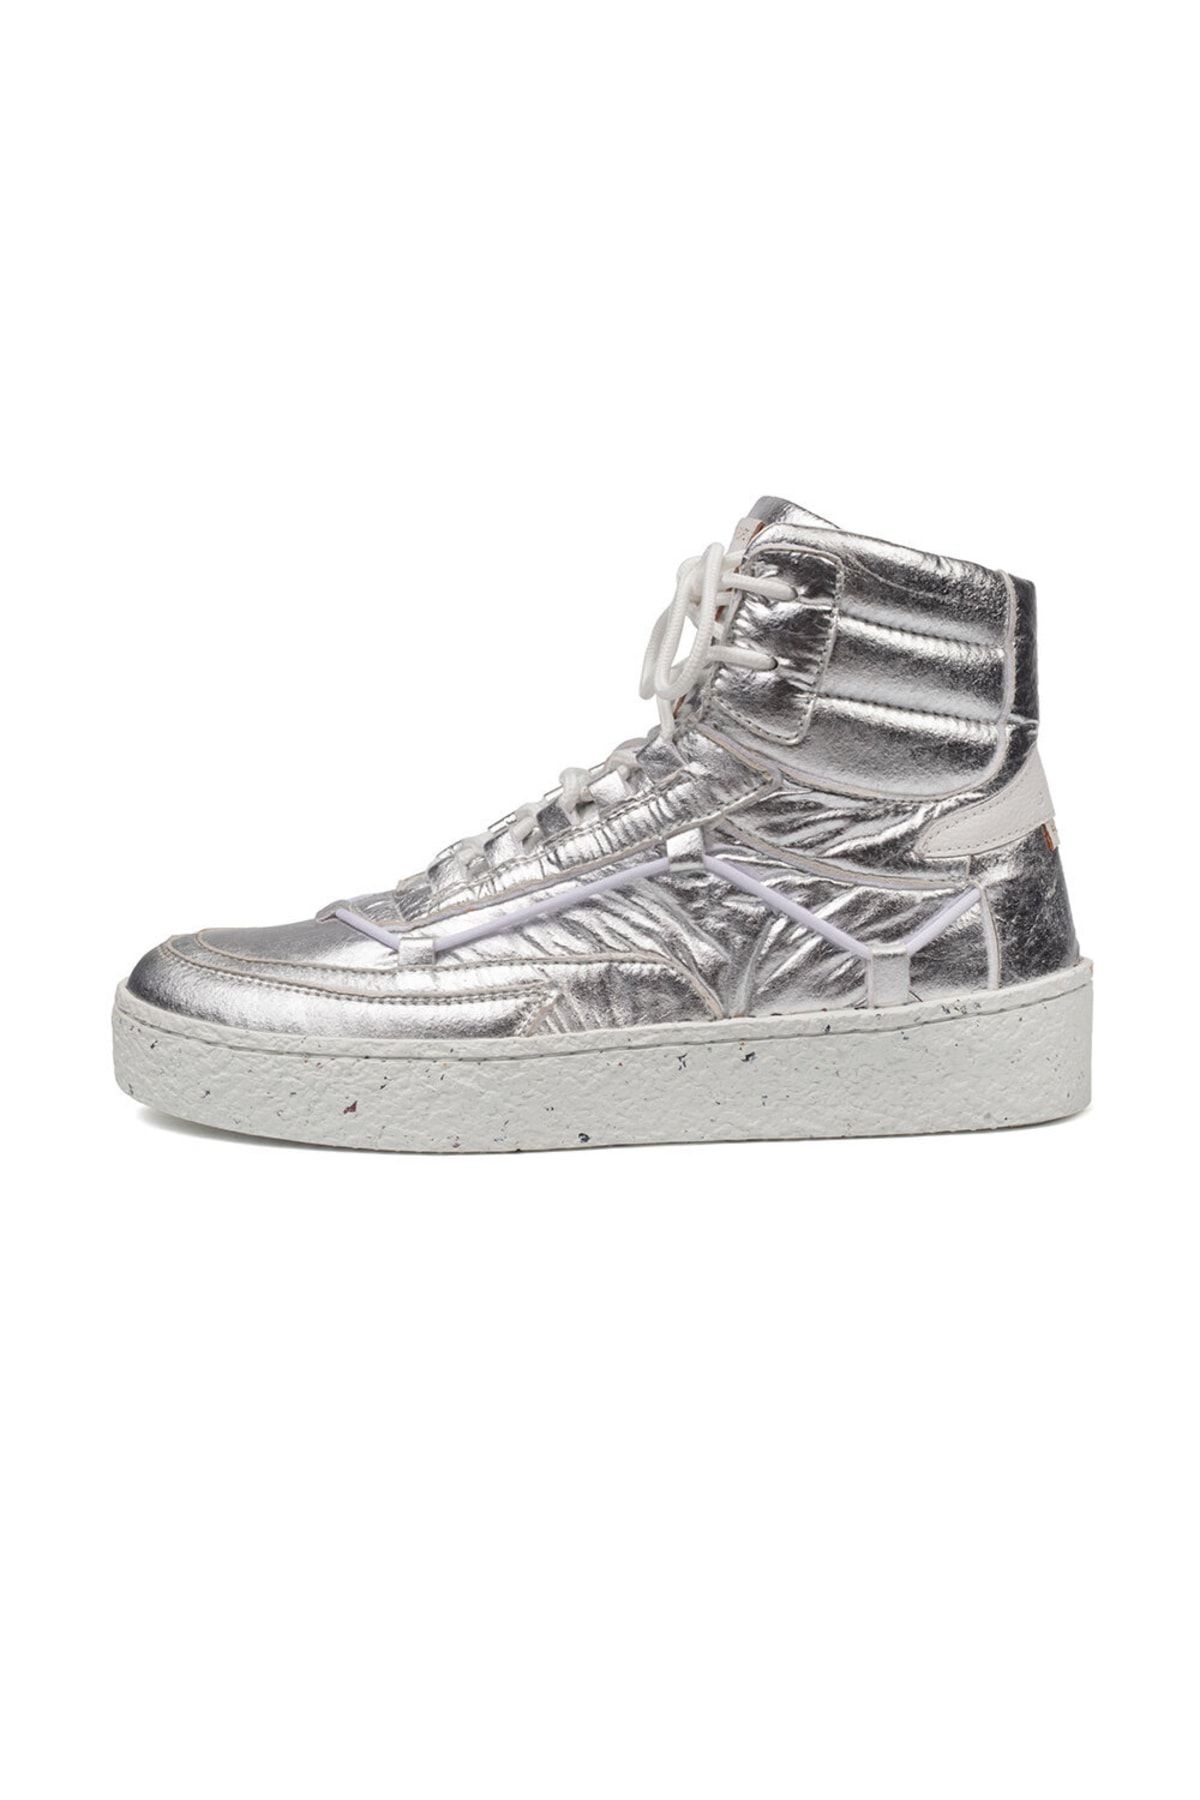 Greyder Lab Kadın Gümüş Sneaker Ayakkabı Gl22168